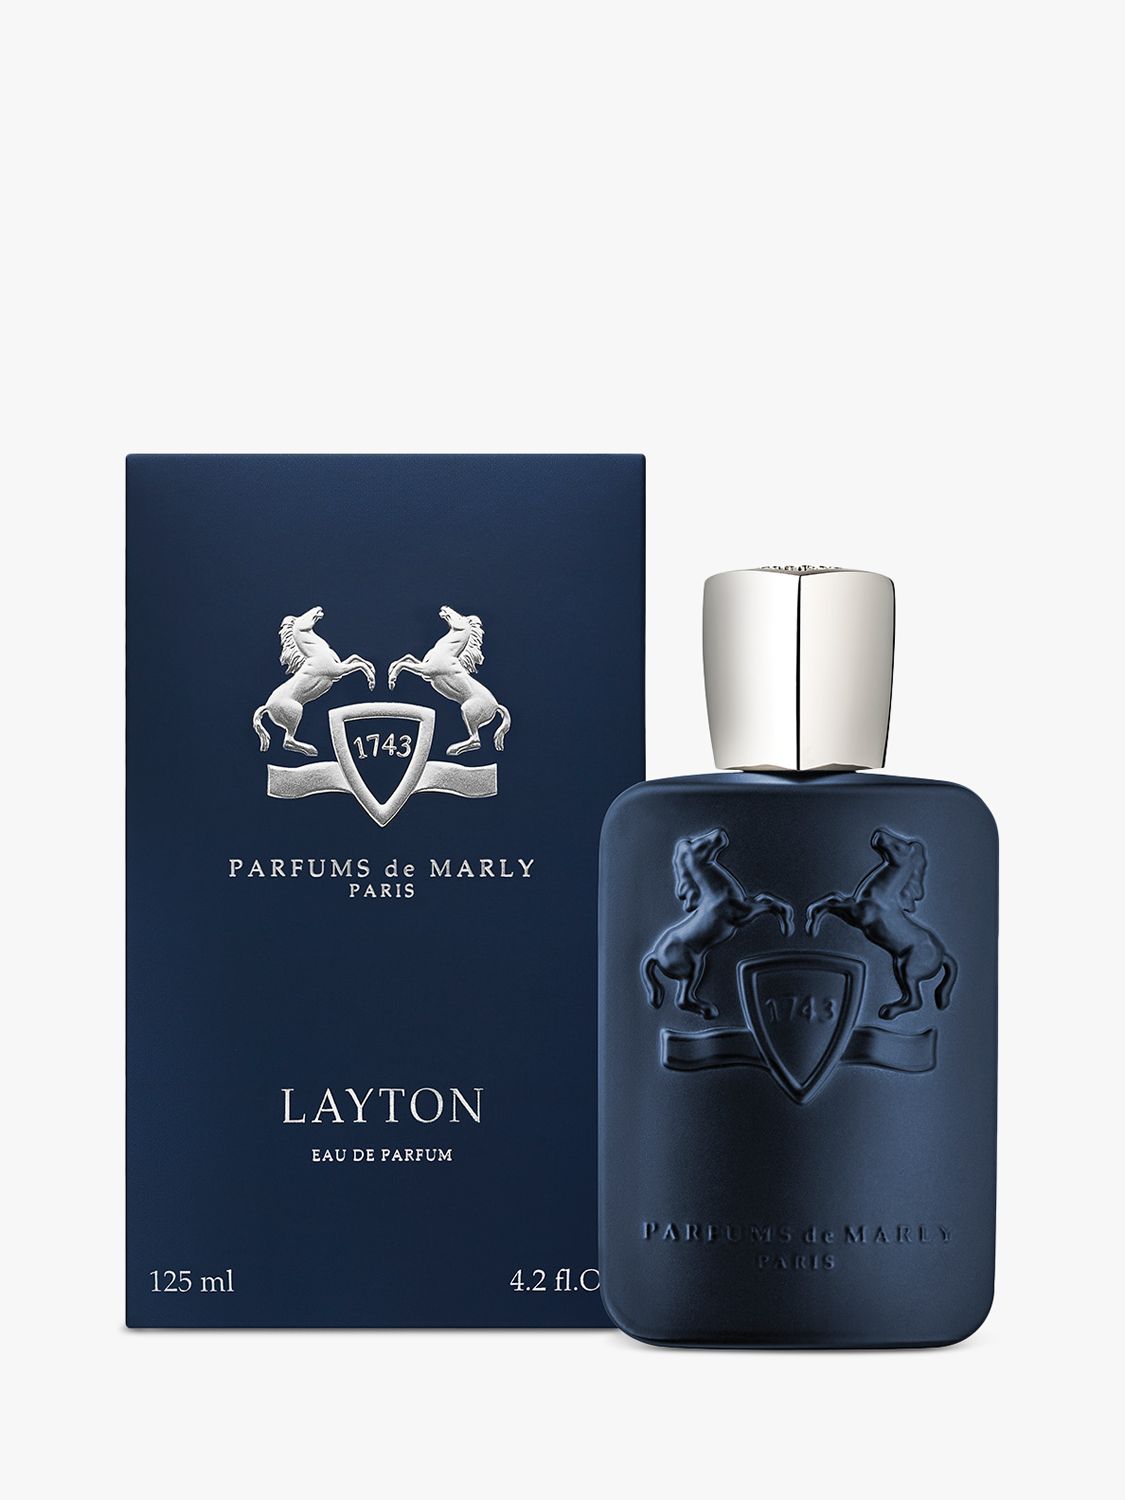 Parfums de Marly Layton Eau de Parfum, 125ml